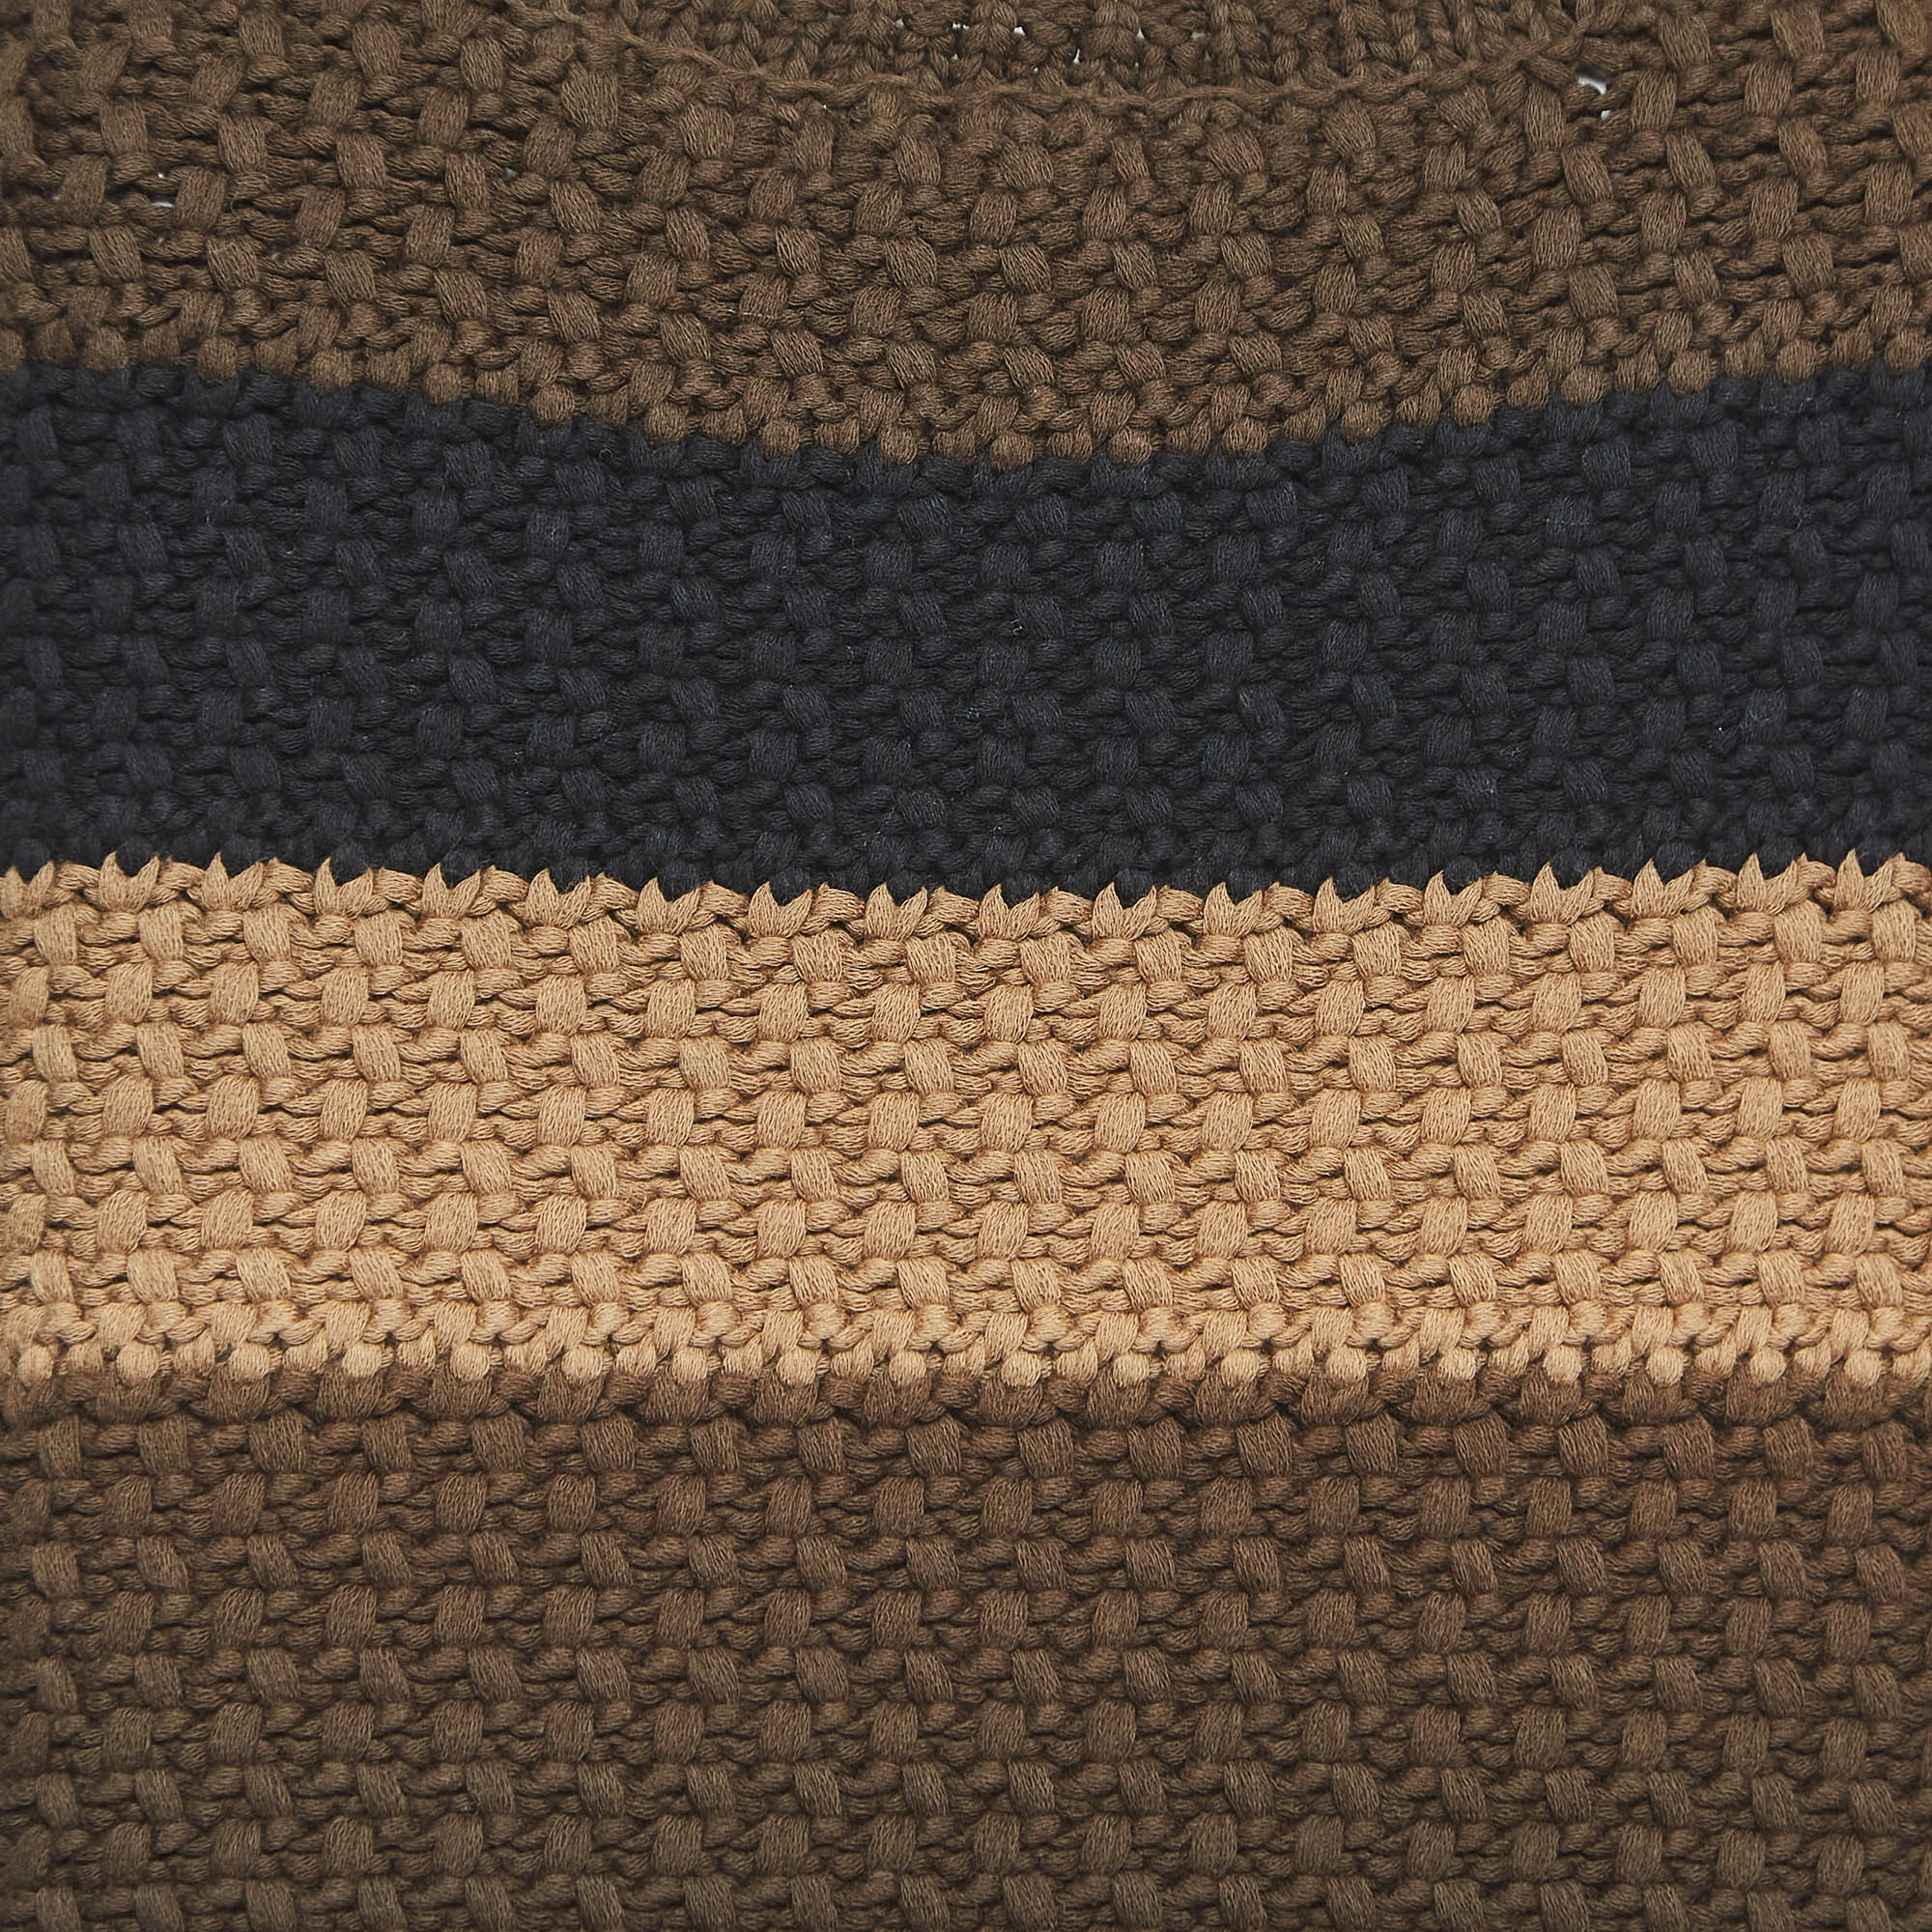 Fendi Brown Striped Knit Top S